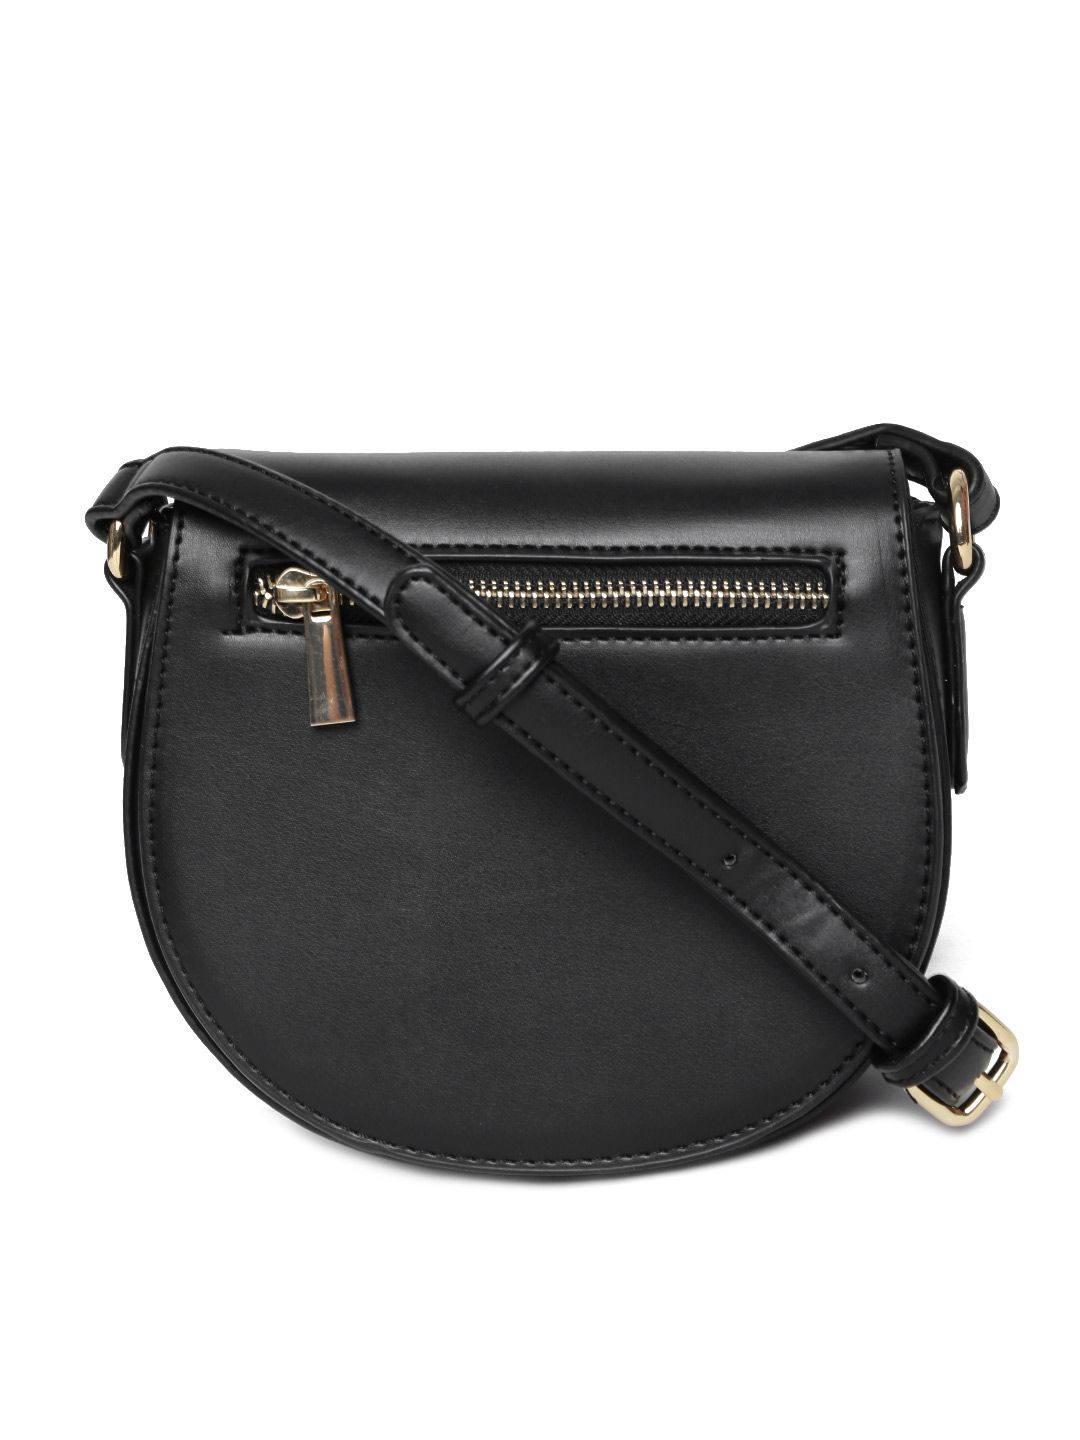 Buy FOREVER 21 Black Sling Bag - Handbags for Women | Myntra